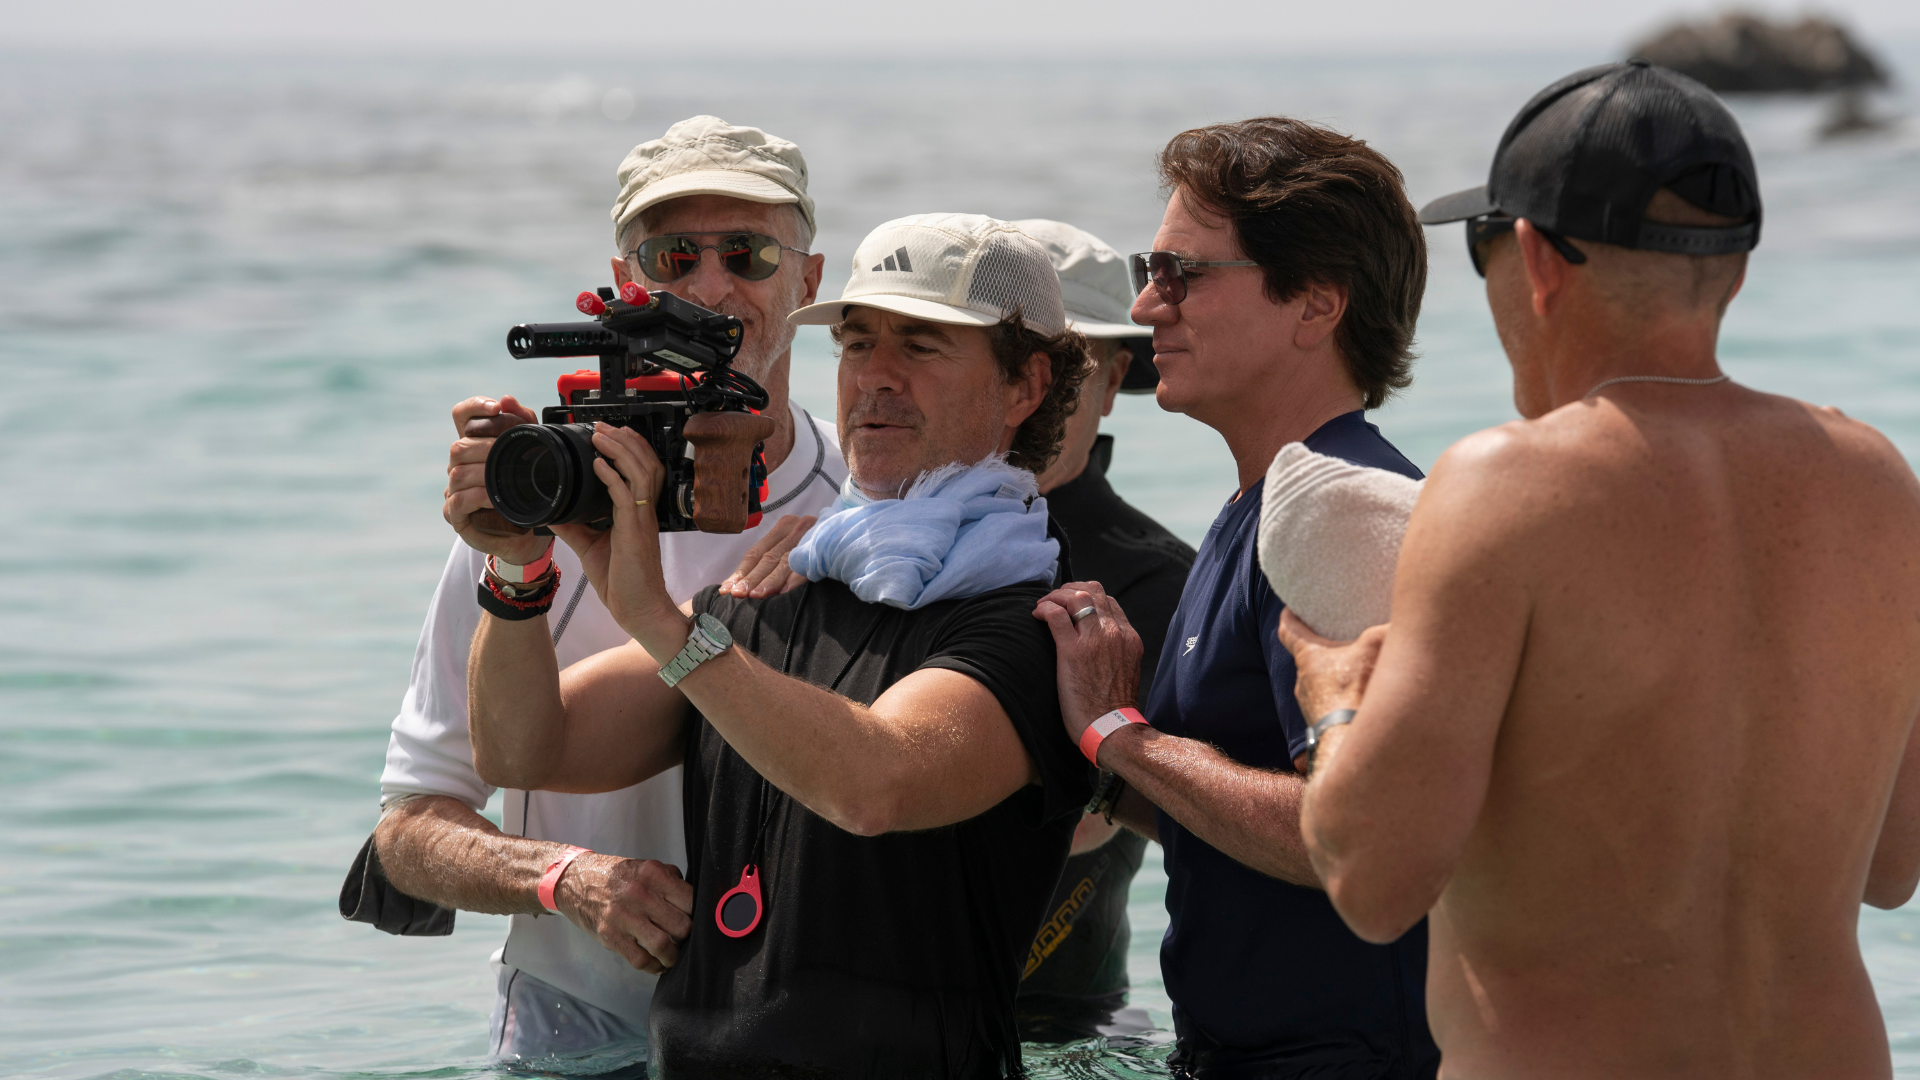 Foto dos bastidores das gravações de A Pequena Sereia. Na imagem há 4 homens no mar e um deles está segurando uma câmera, filmando uma cena